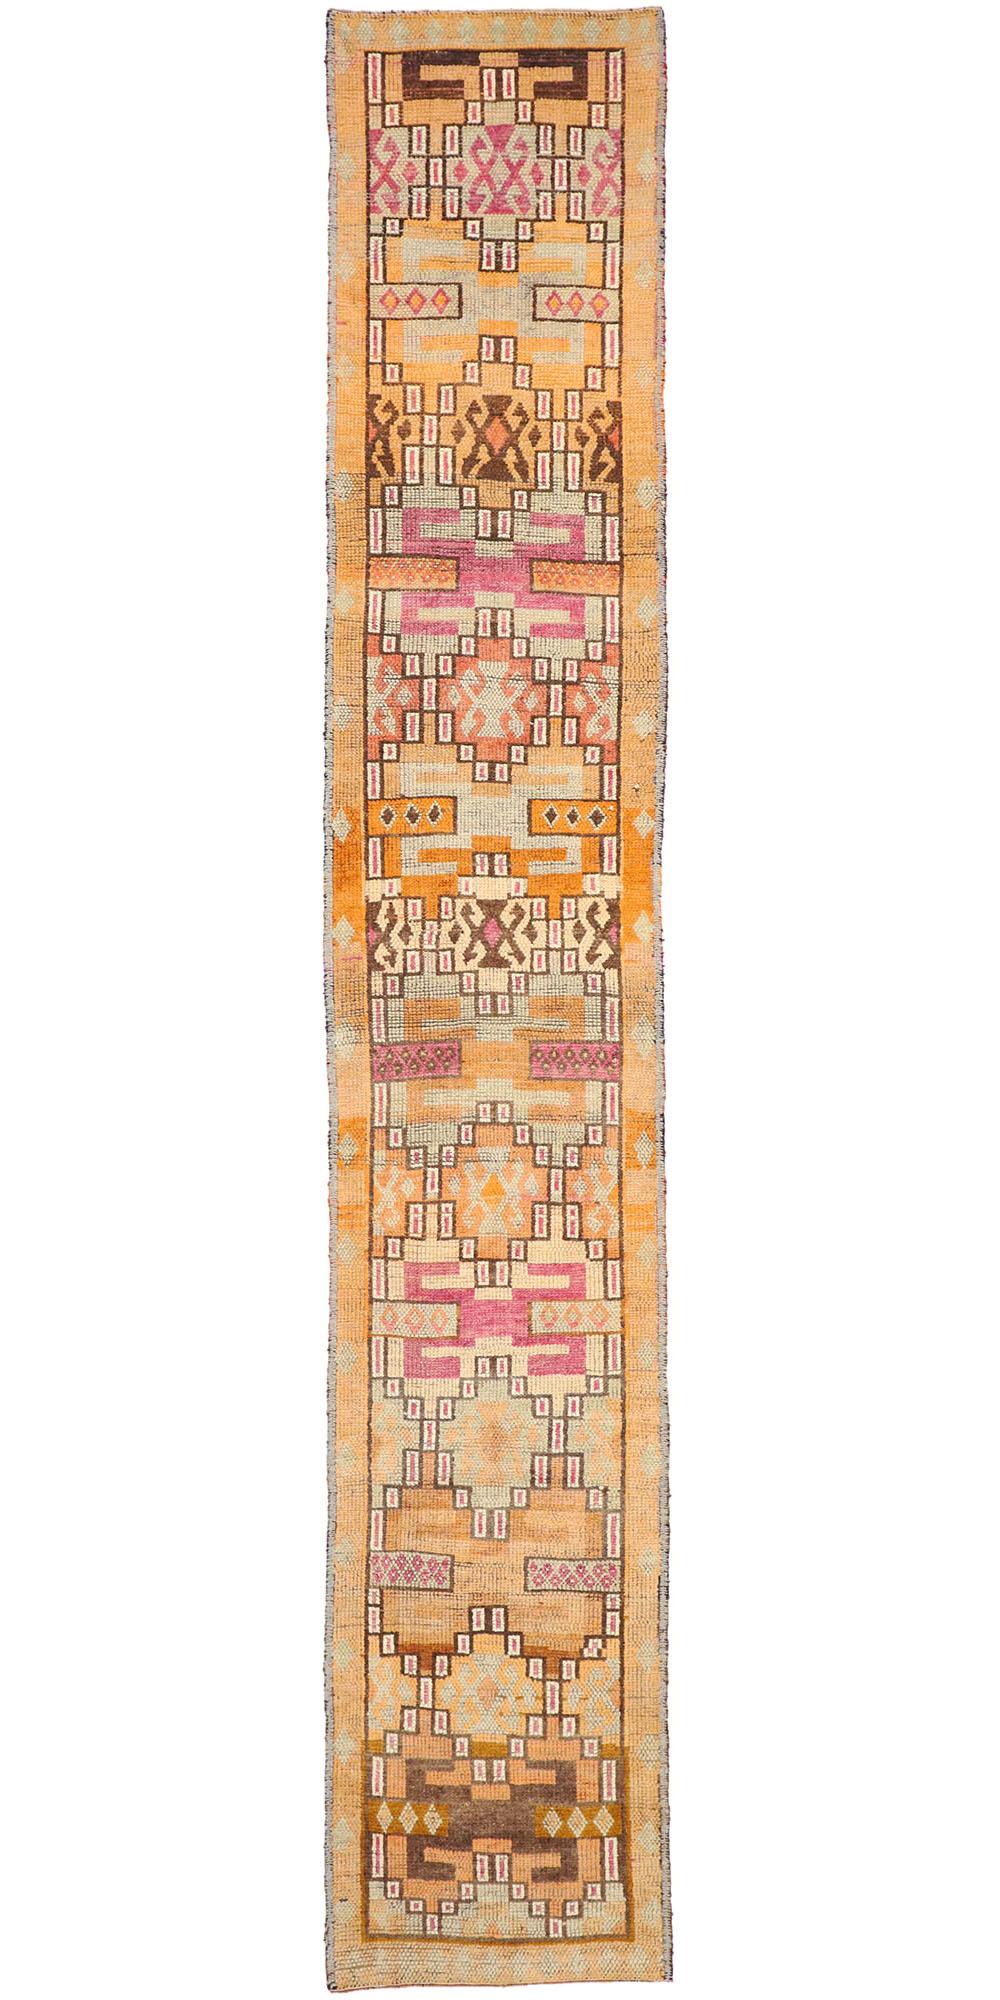 Colorful Vintage Orange Turkish Tribal Oushak Rug Carpet Runner For Sale 2